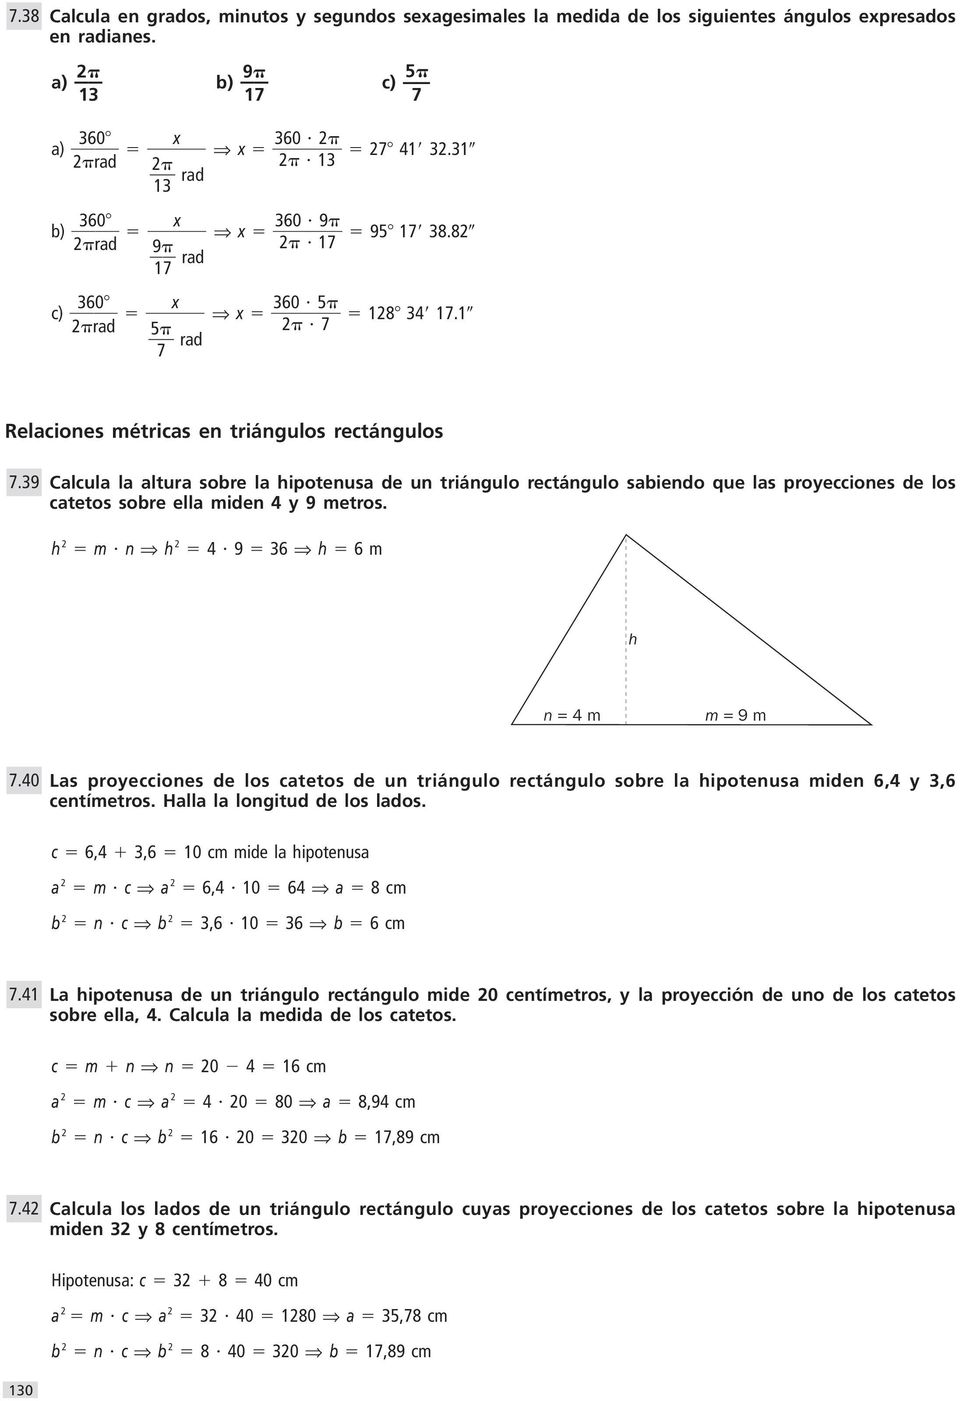 39 alcula la altura sobre la hipotenusa de un triángulo rectángulo sabiendo que las proyecciones de los catetos sobre ella miden 4 y 9 metros. h m n h 4 9 3 h m h n = 4 m m = 9 m 7.